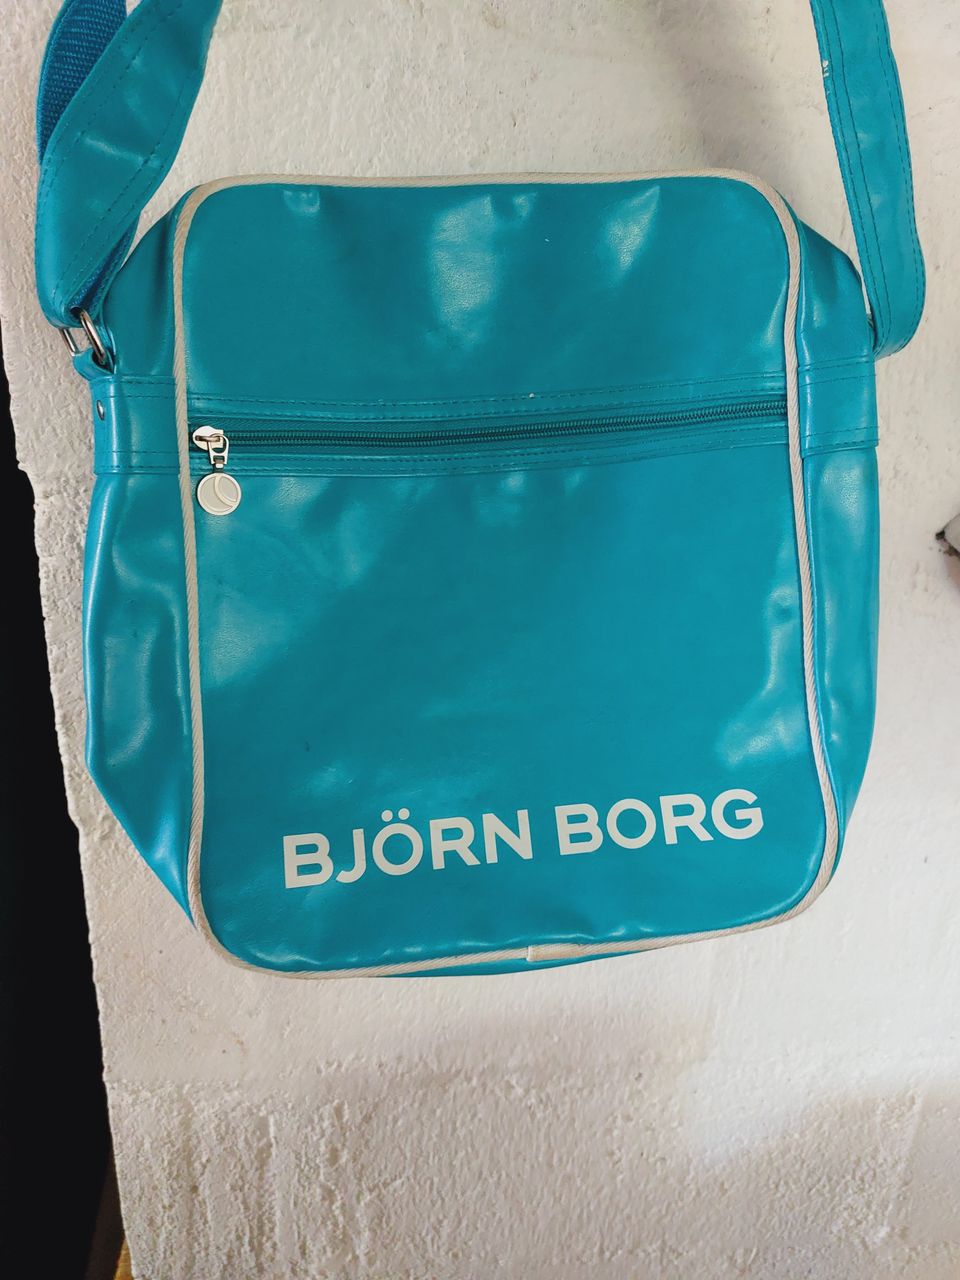 Björn Borg -laukku